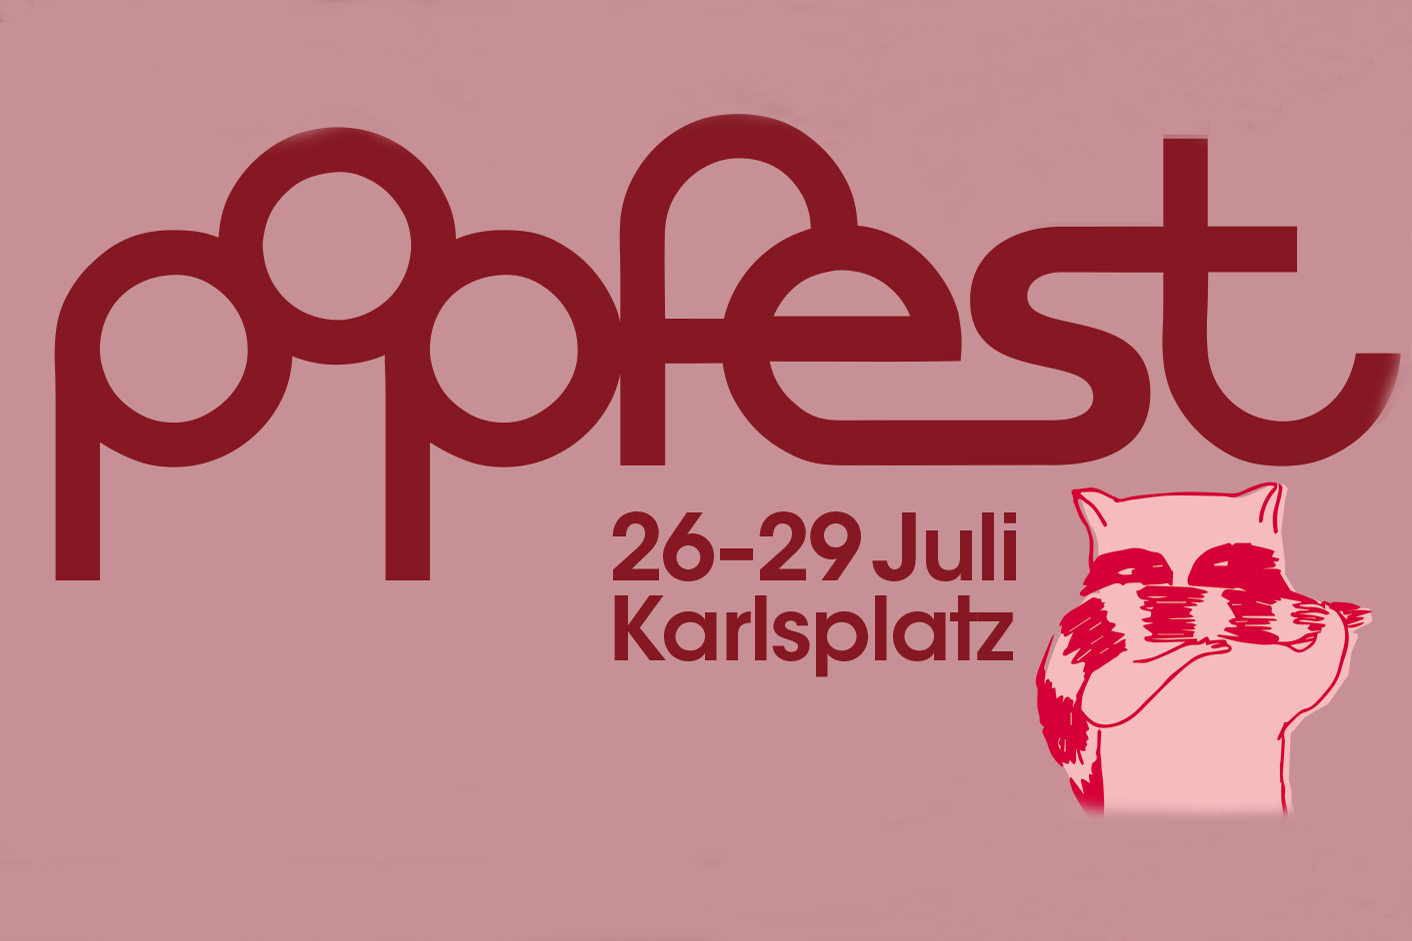 Popfest u Beču: Šarolik program i nove lokacije